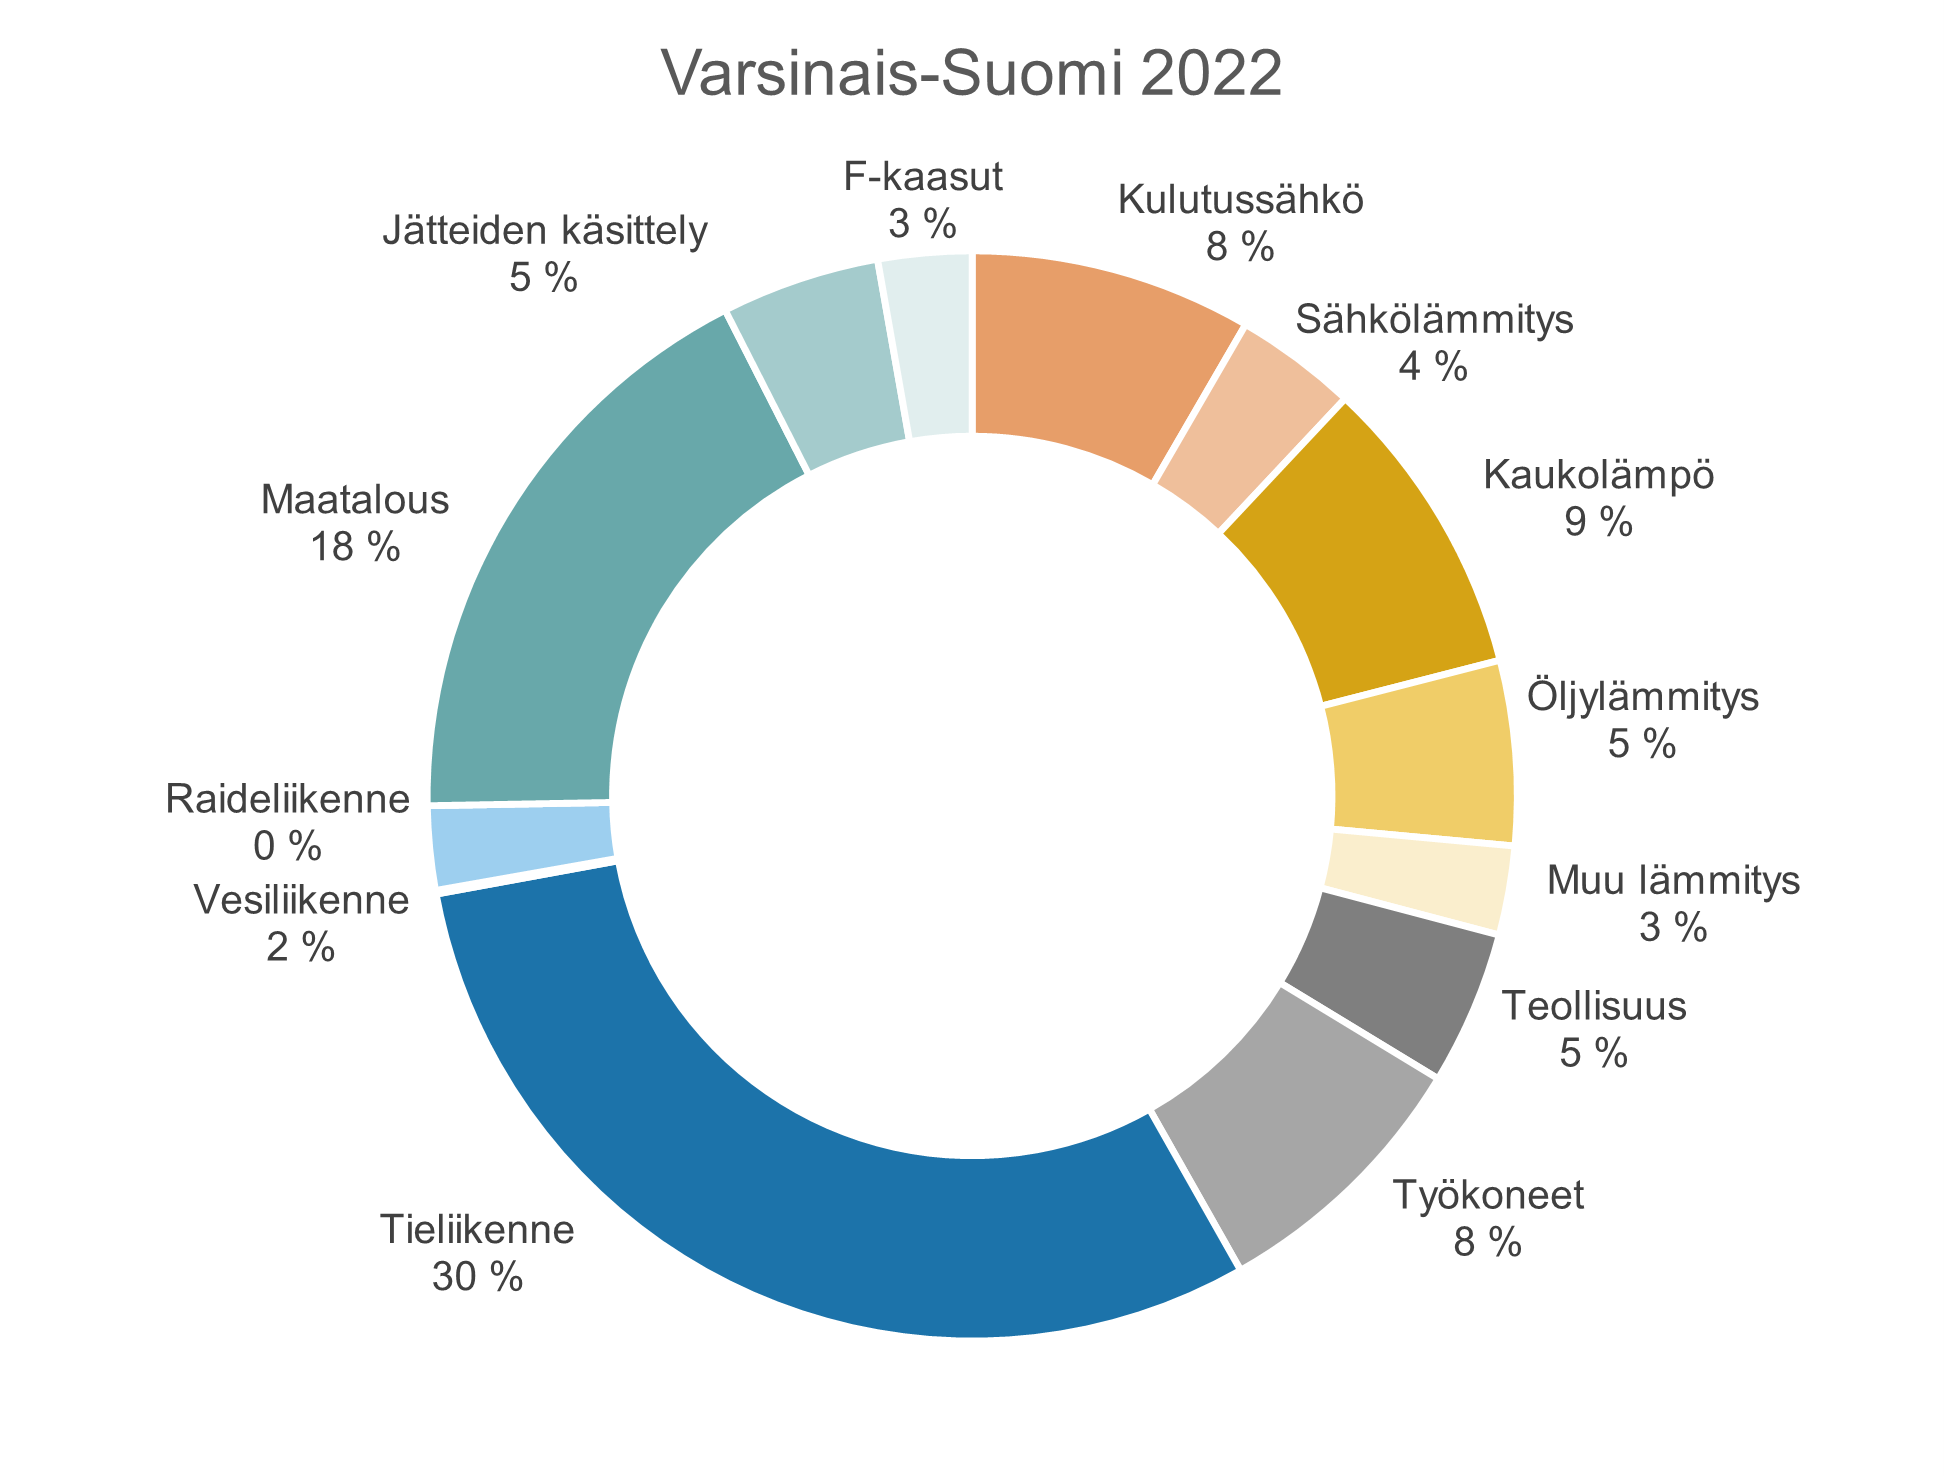 Varsinais-Suomen kuntien yhteenlaskettujen kasvihuonekaasupäästöjen jakauma vuonna 2022. 